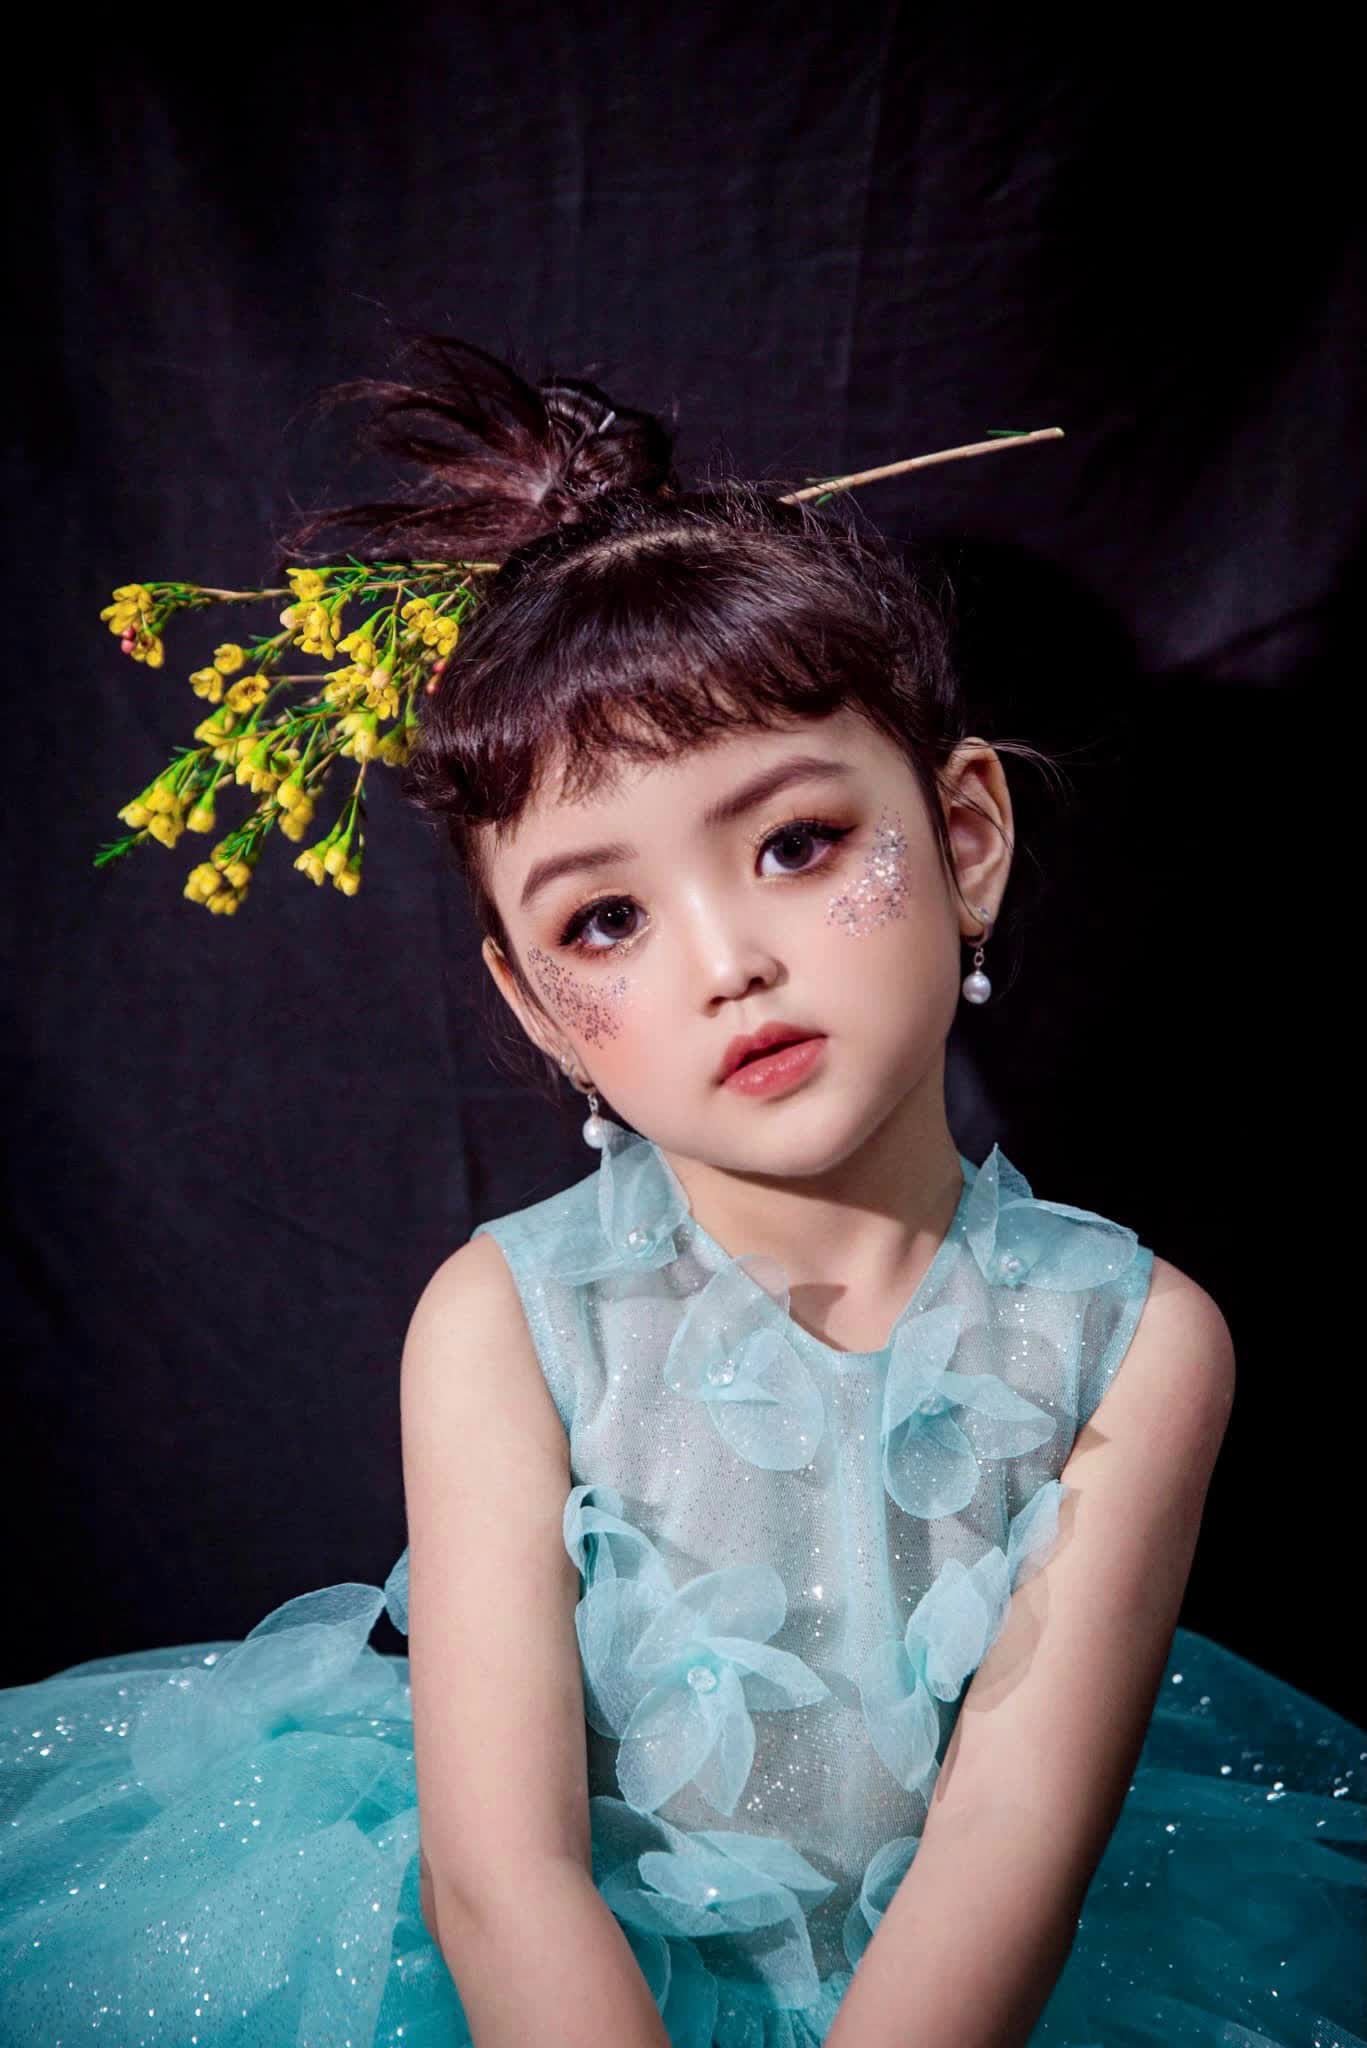 Con gái Quỳnh Kool đang gây sốt: Từng đóng Thu Quỳnh hồi nhỏ, xinh như thiên thần - Ảnh 2.